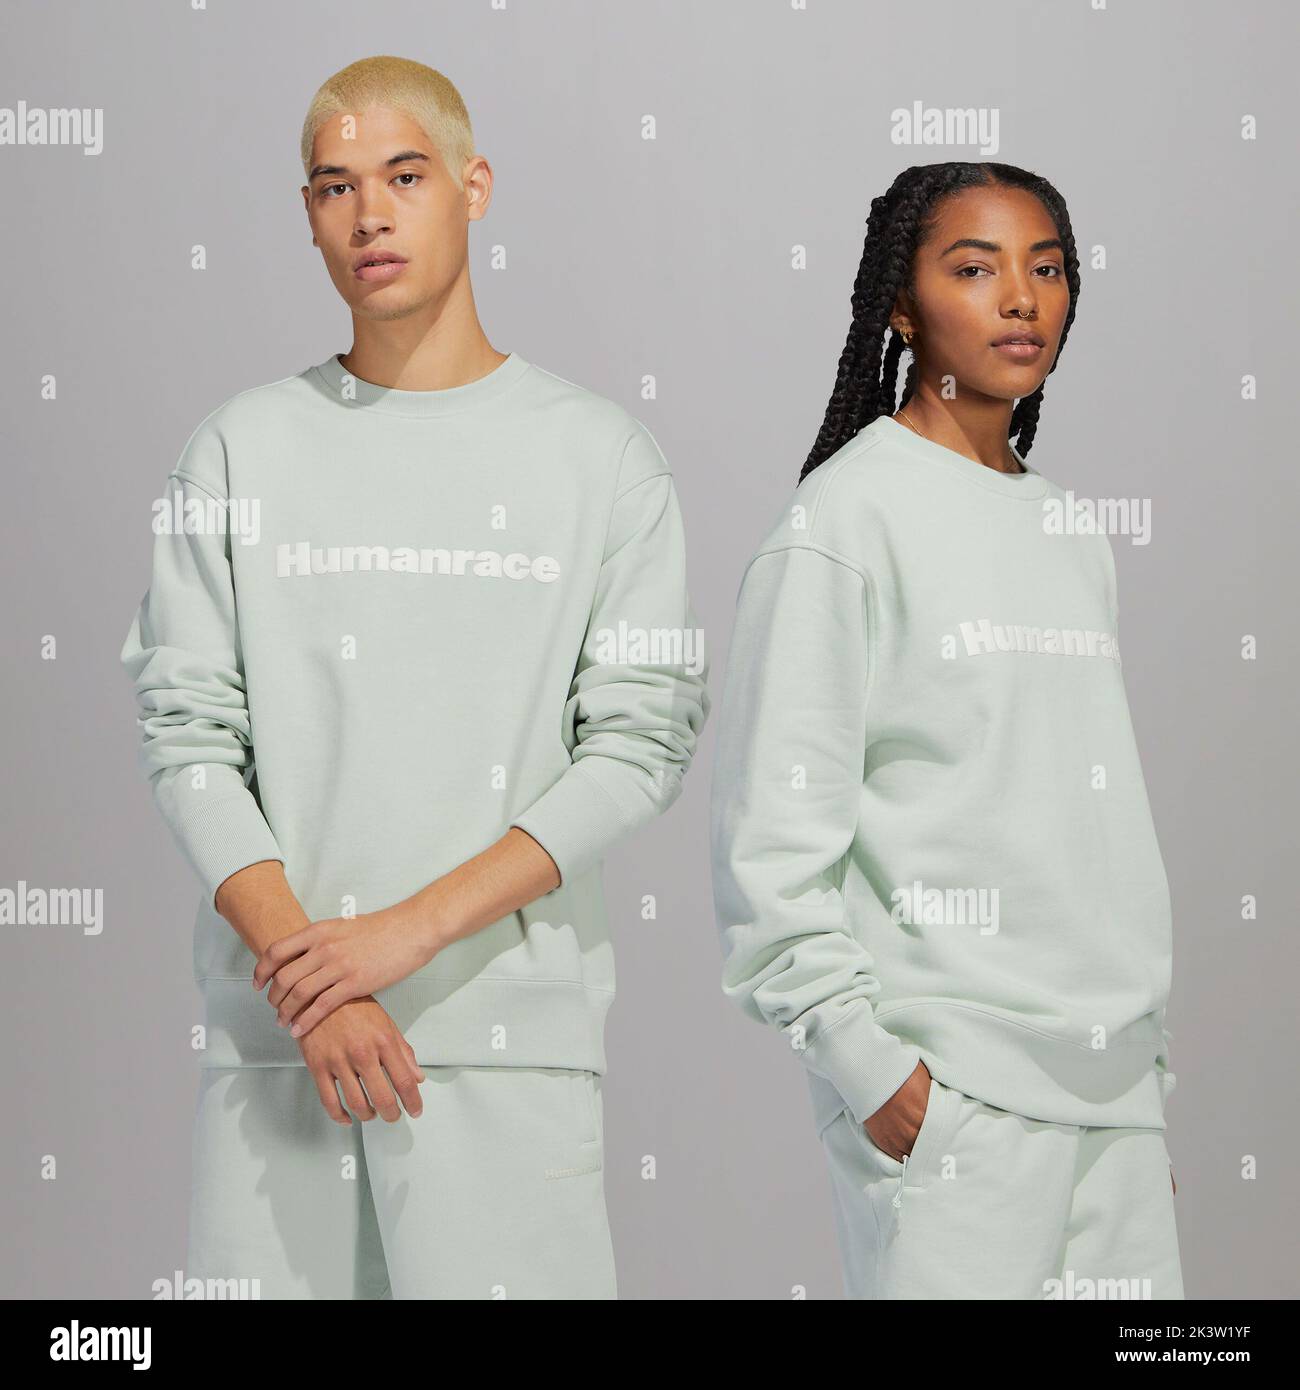 Justo antes de la temporada de otoño, adidas Originals y Pharrell a lanzar una amplia gama de nuevos colores de colección Humanrace Premium Basics, neutral en cuanto a género.